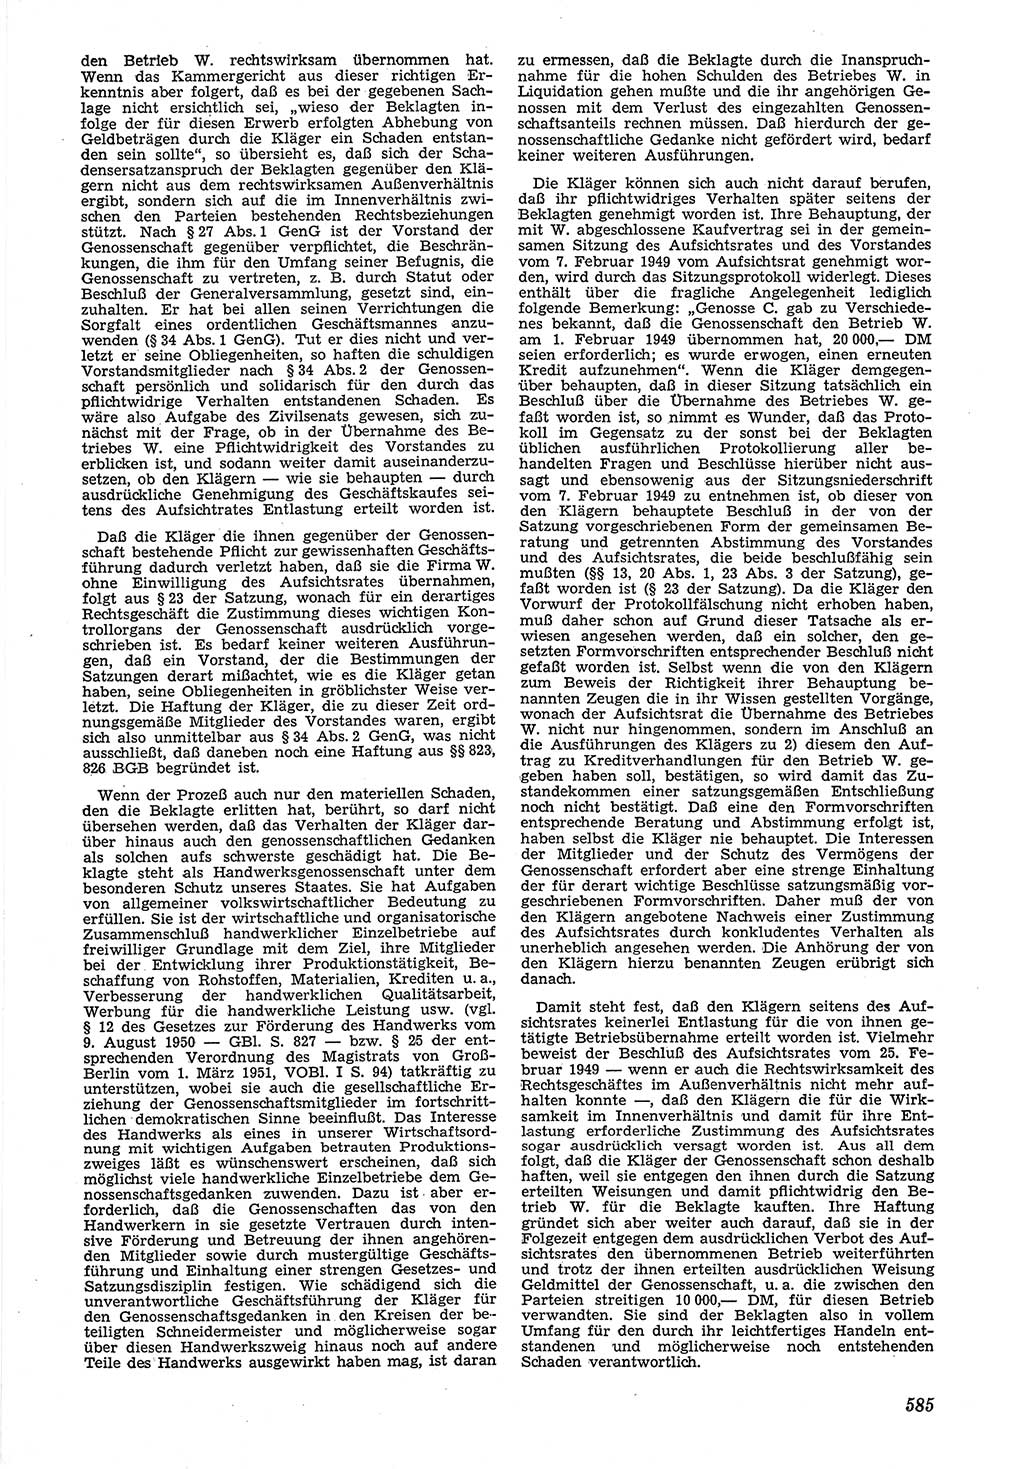 Neue Justiz (NJ), Zeitschrift für Recht und Rechtswissenschaft [Deutsche Demokratische Republik (DDR)], 6. Jahrgang 1952, Seite 585 (NJ DDR 1952, S. 585)